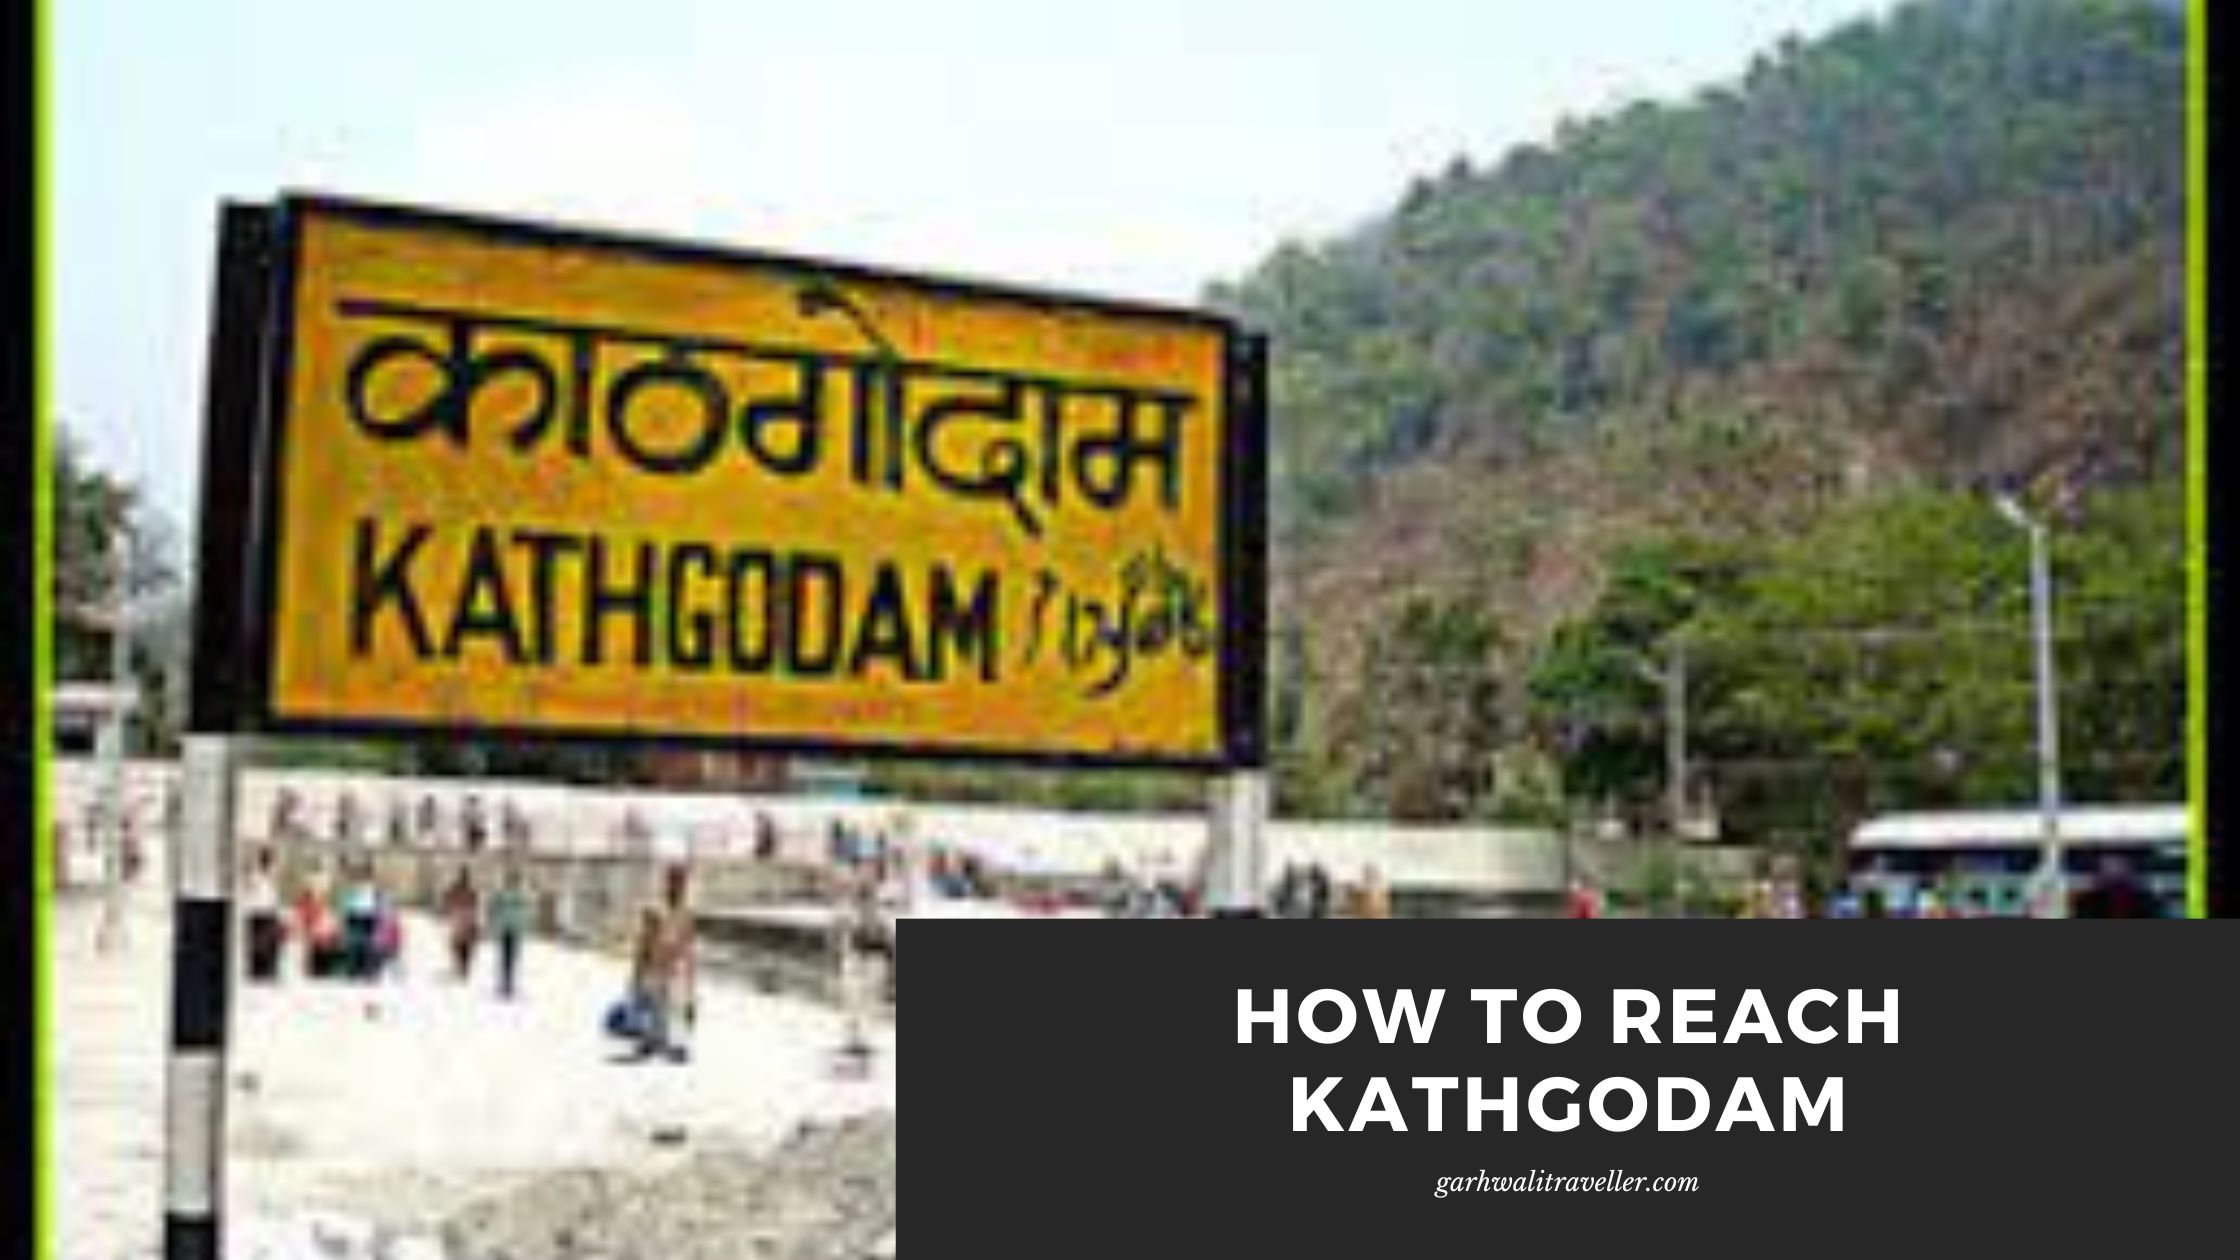 How to reach kathgodam